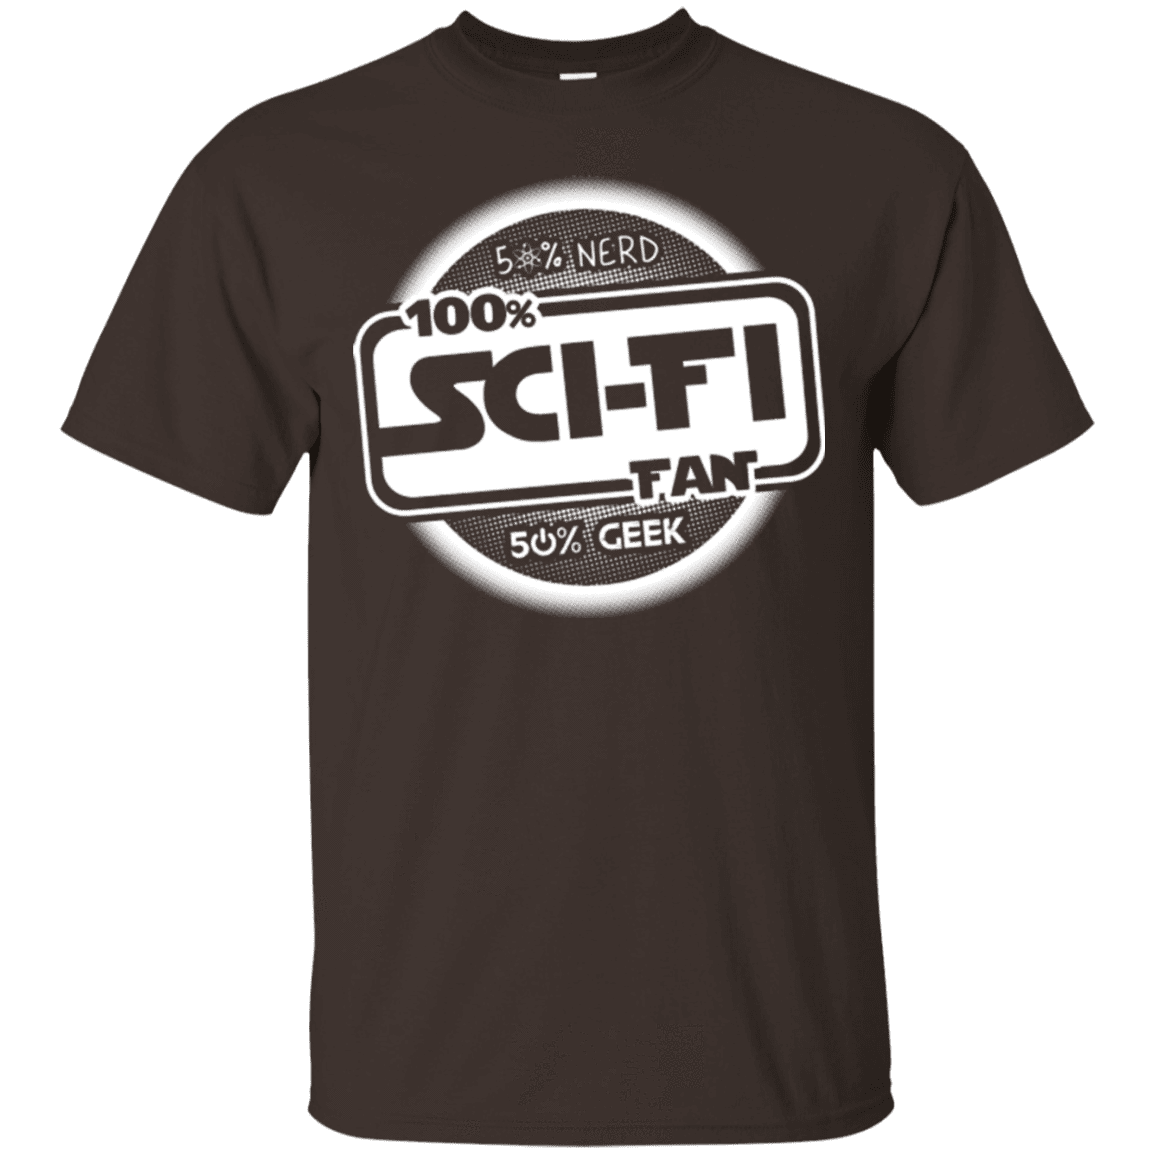 T-Shirts Dark Chocolate / Small 100 Percent Sci-fi T-Shirt